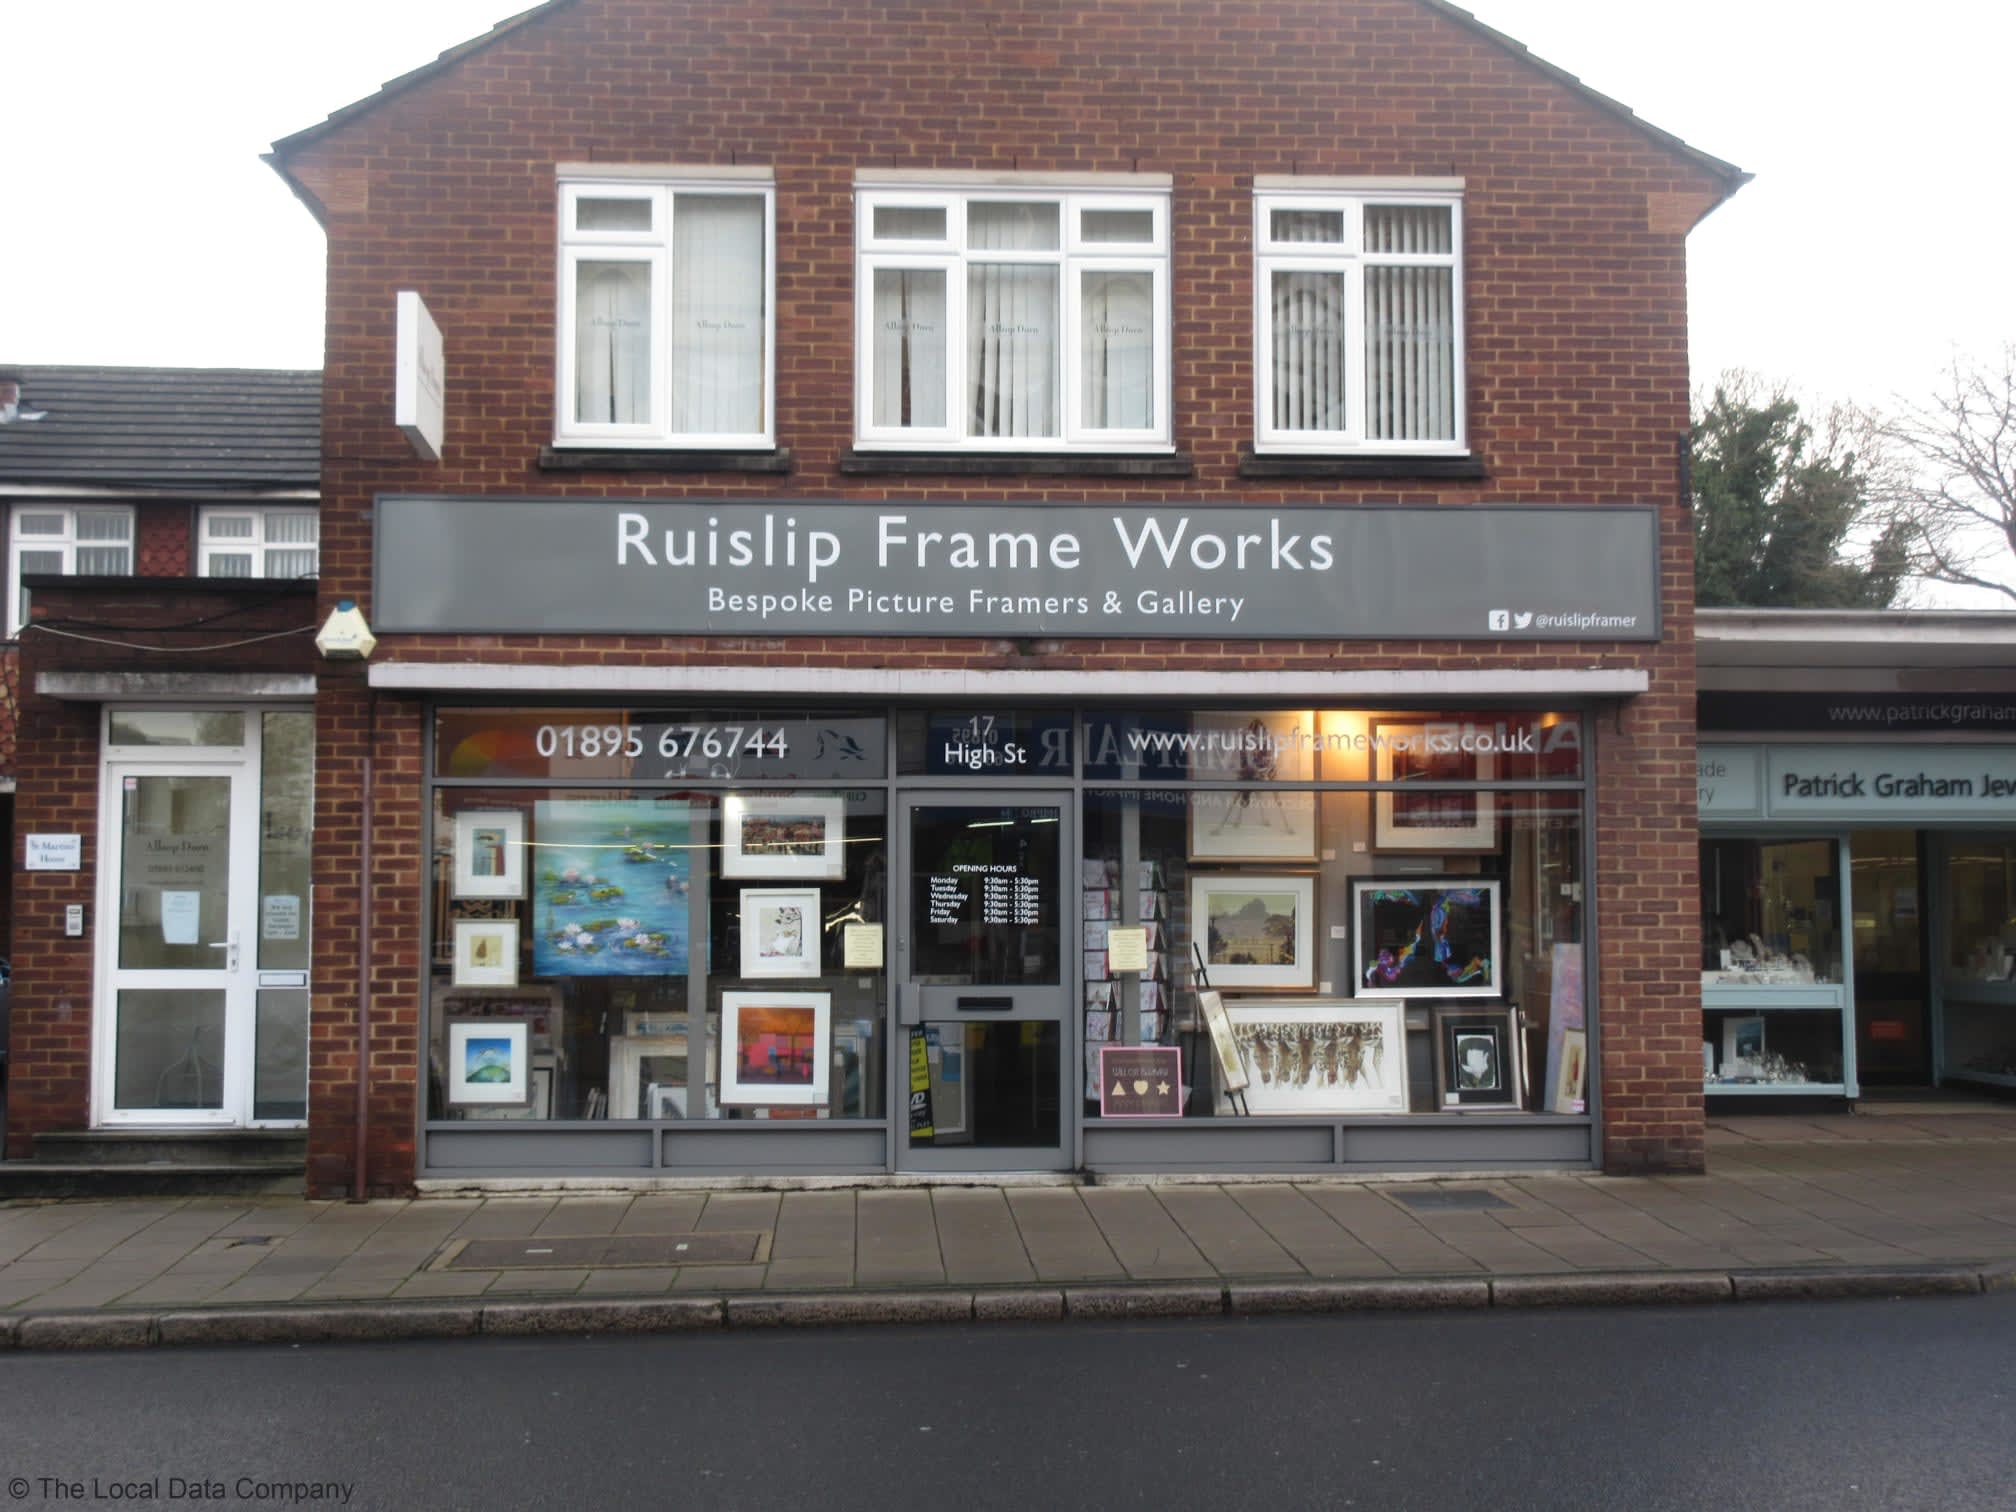 Images Ruislip Frame Works Ltd